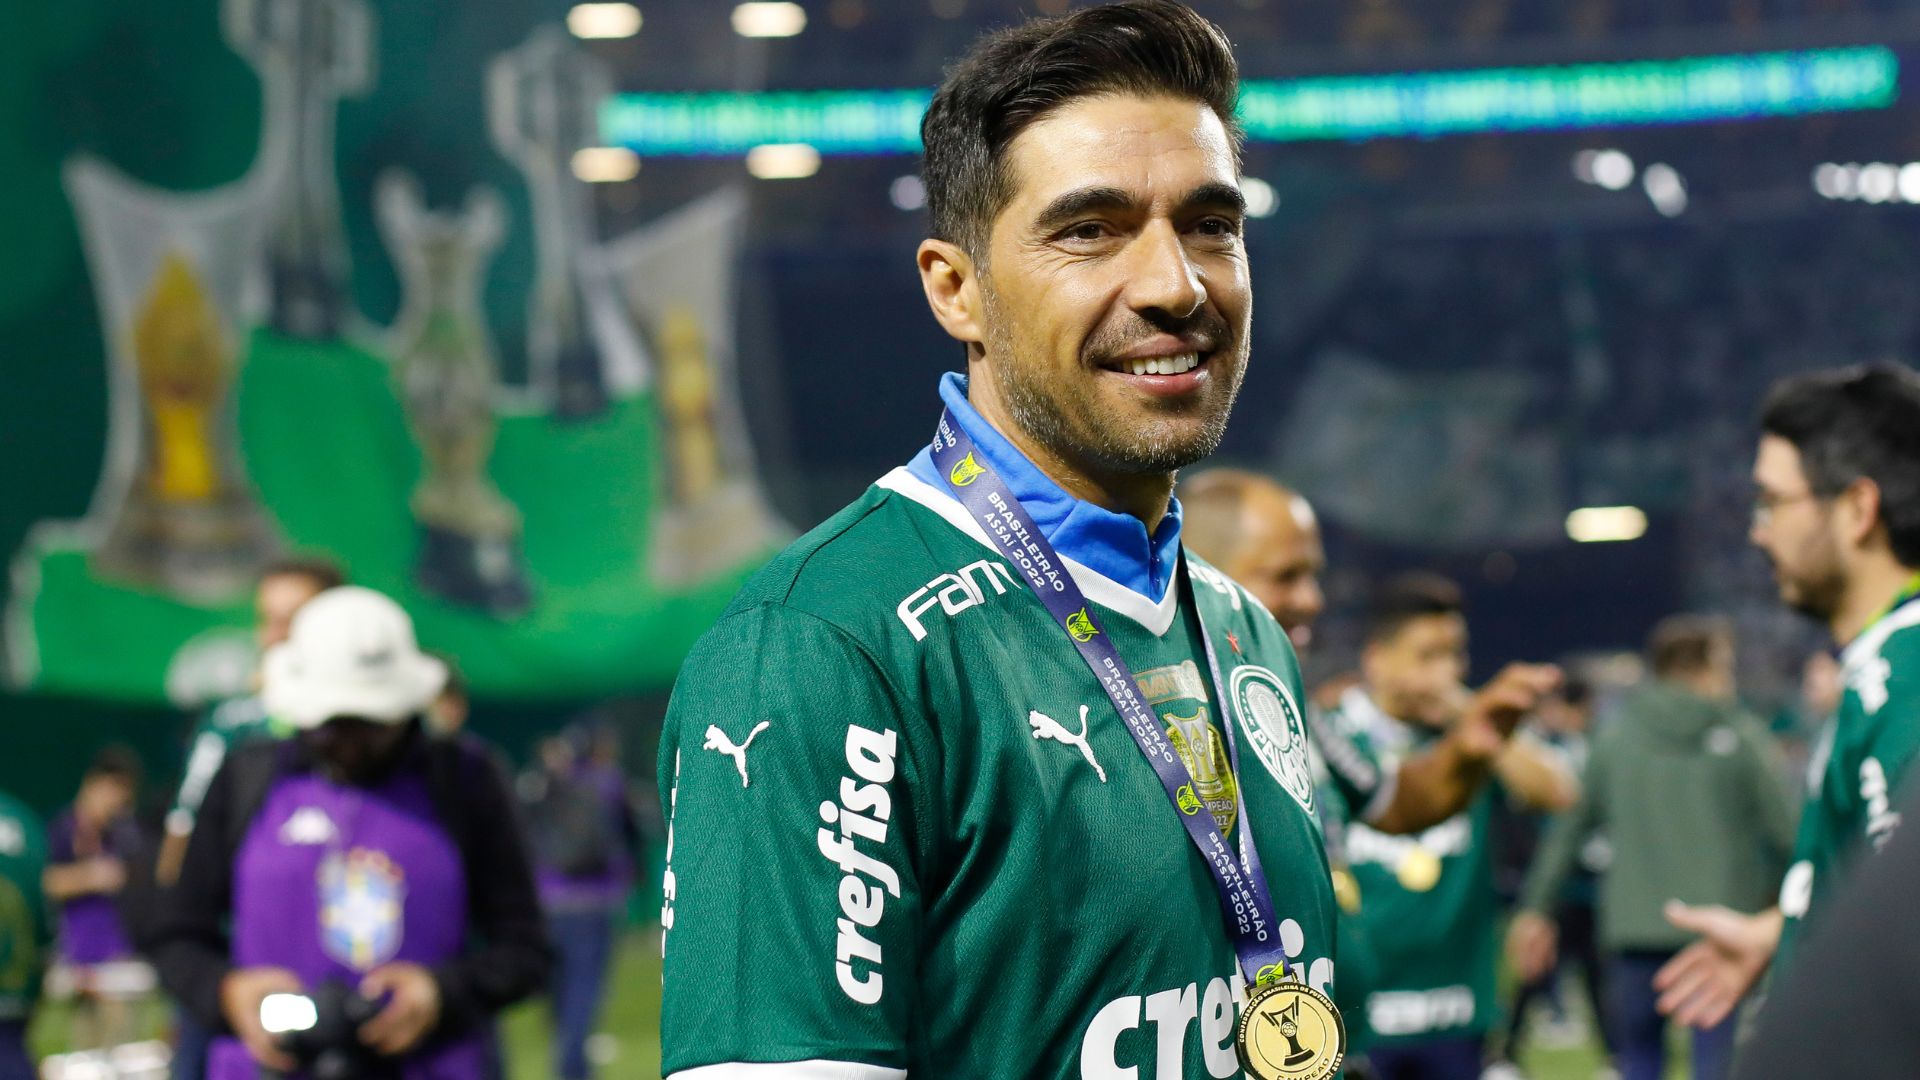 Abel has collected titles as coach of Palmeiras